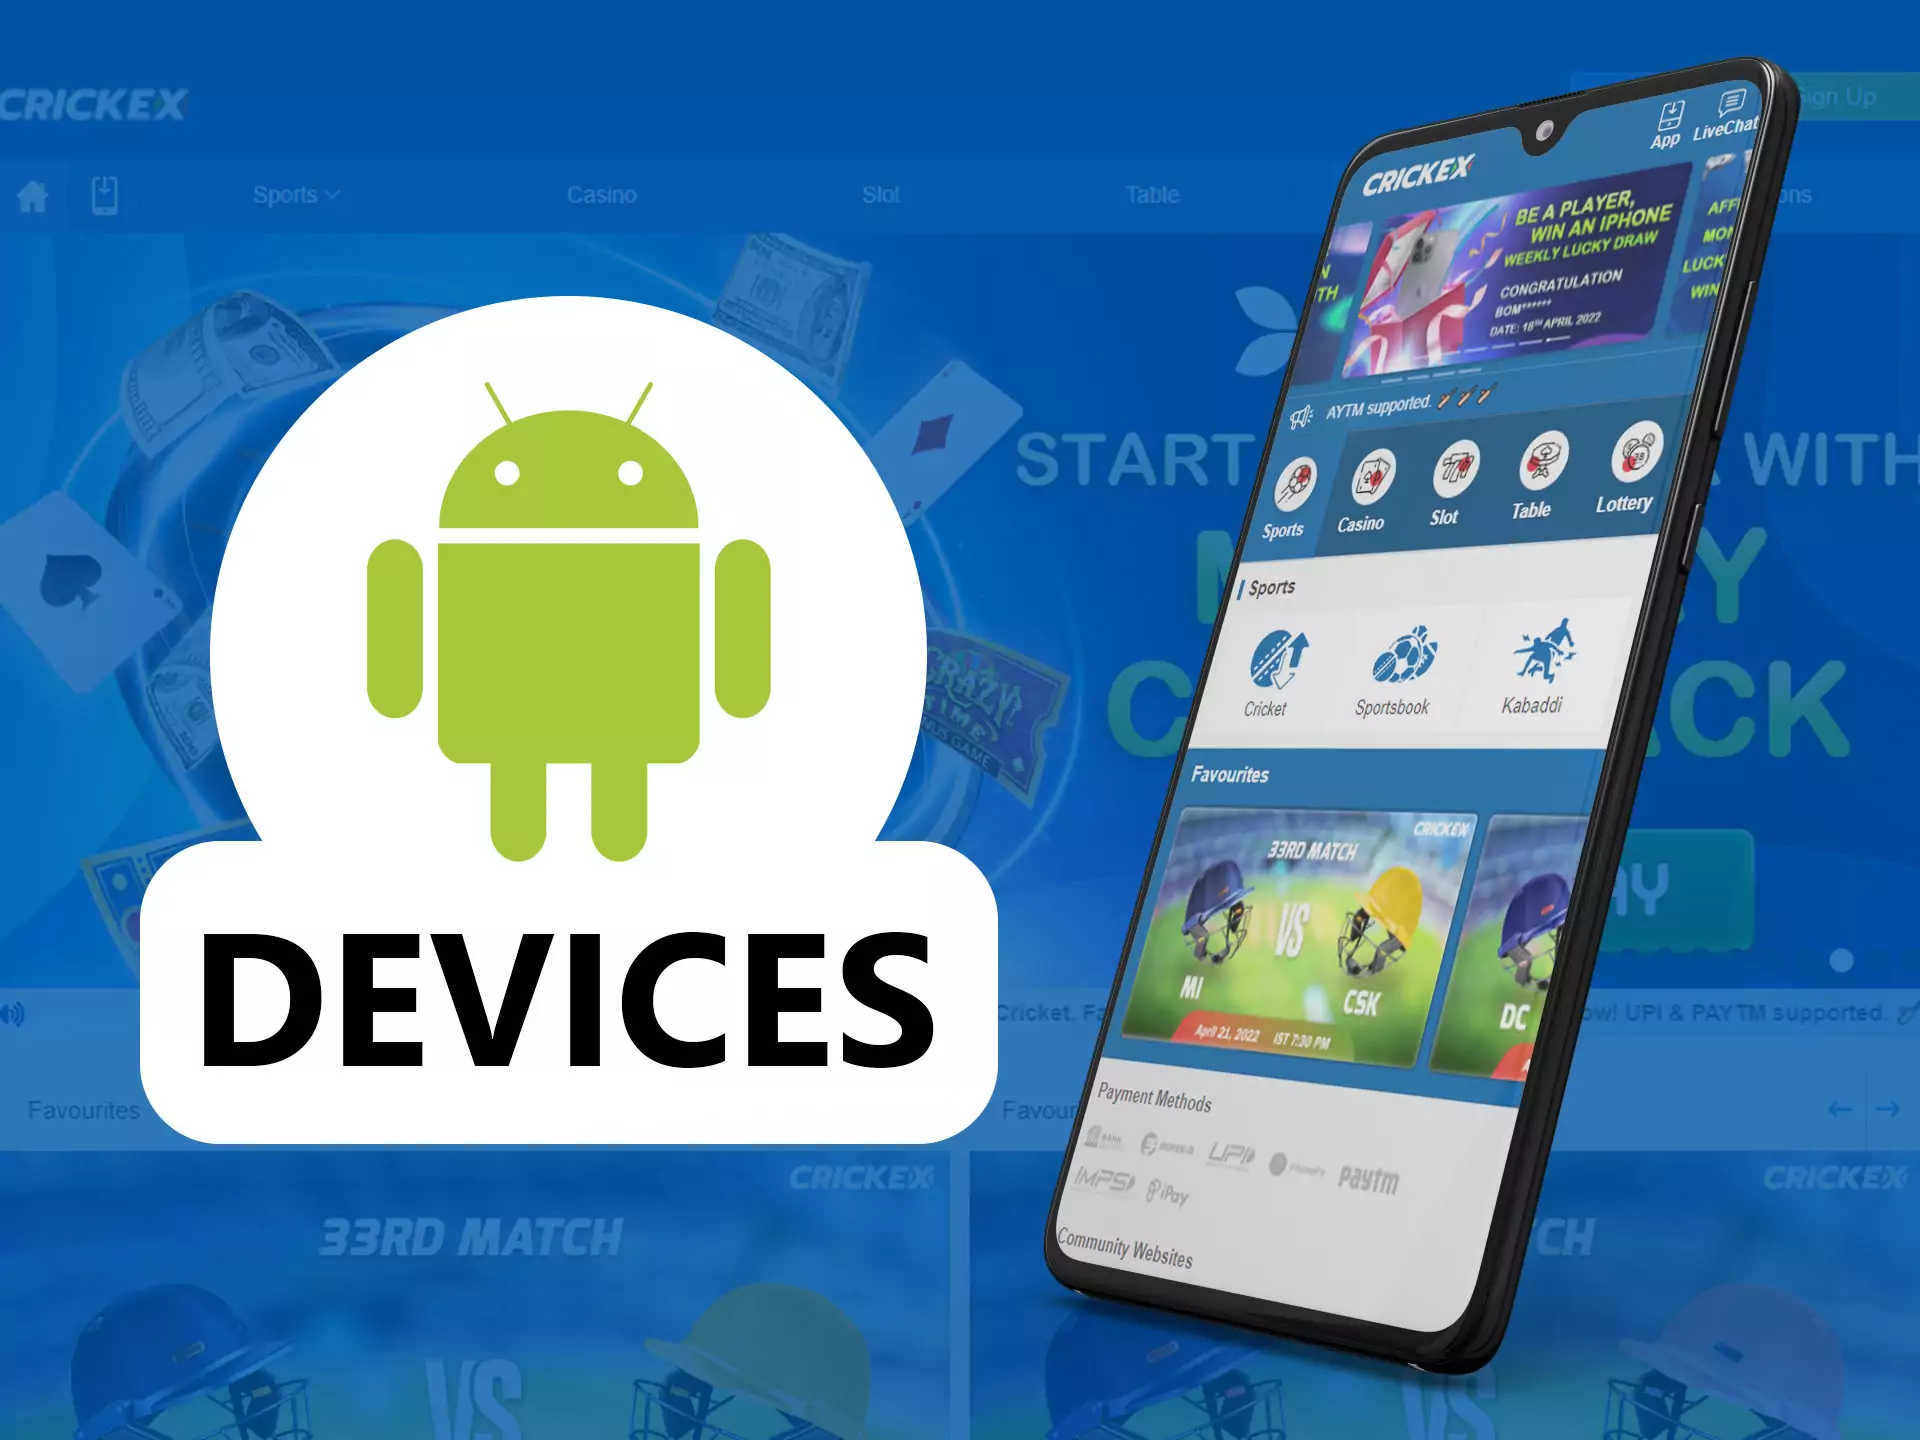 के Crickex app Android के लिए स्थिर है सबसे उपकरणों पर।